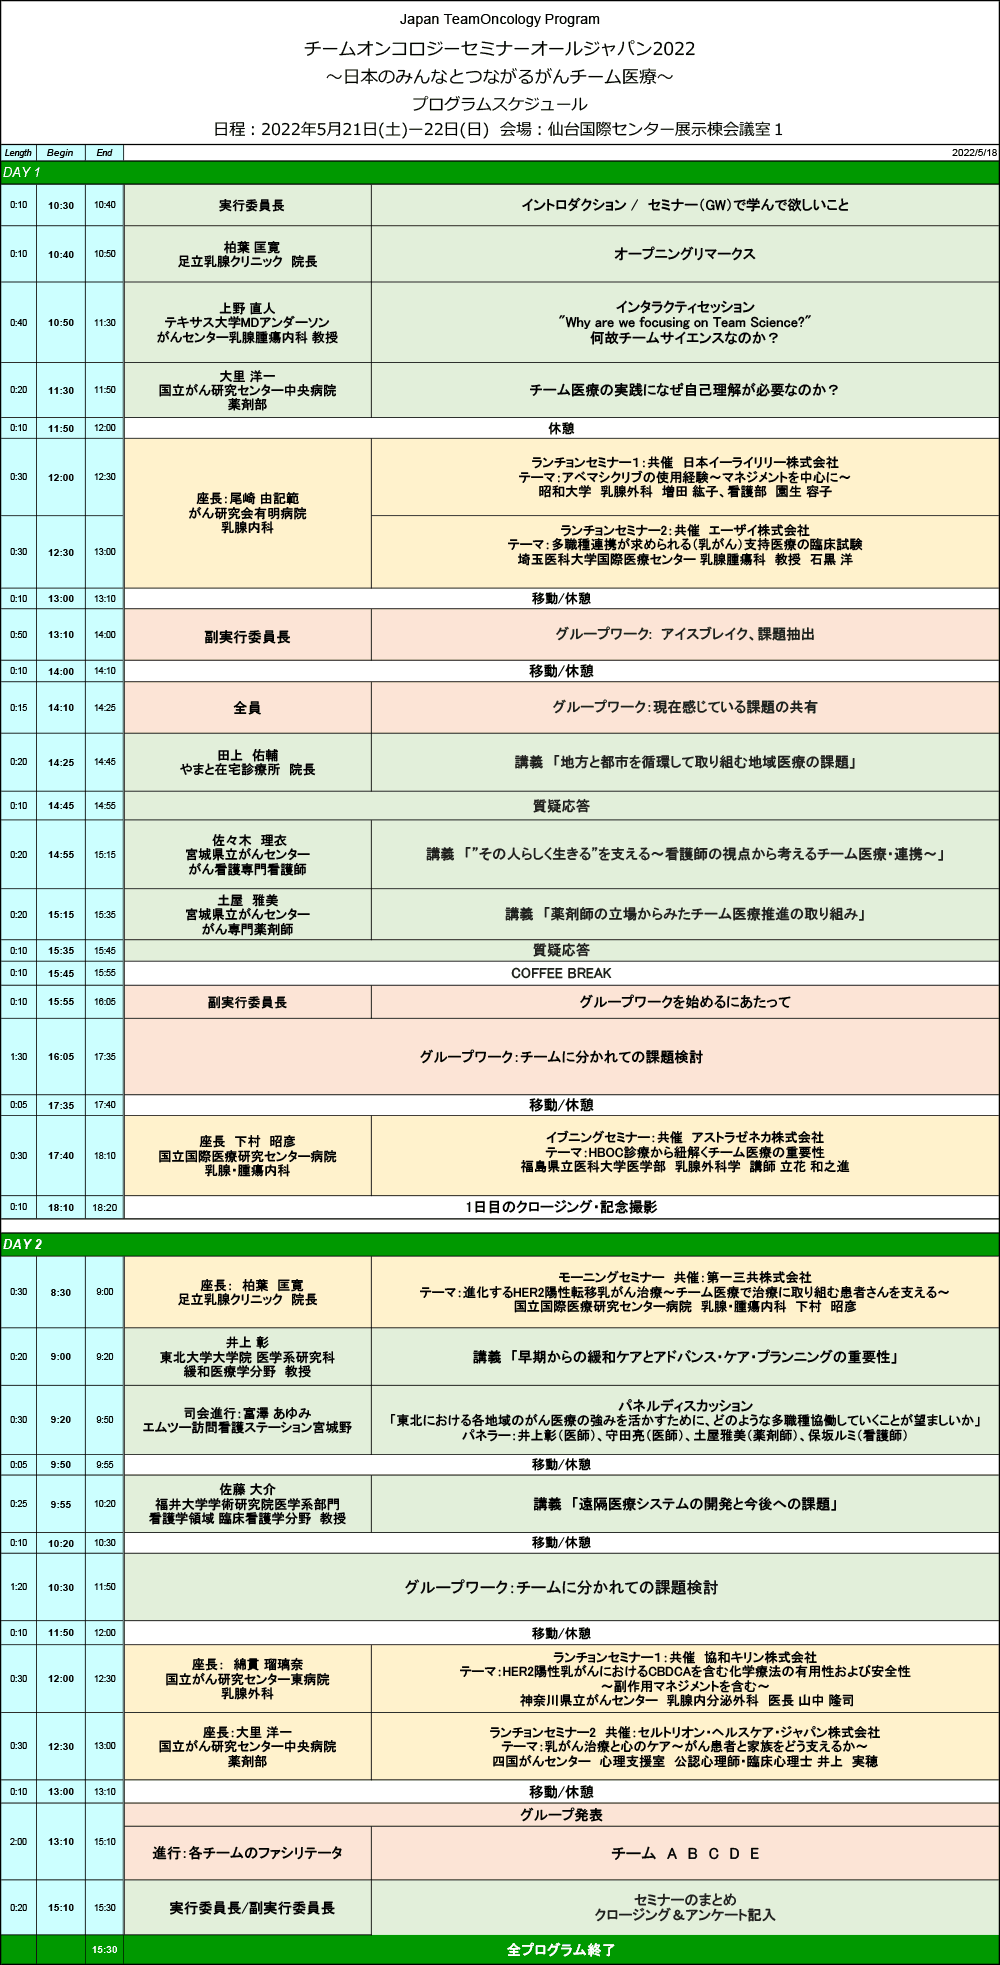 プログラムスケジュール　チームオンコロジーセミナーオールジャパン2022